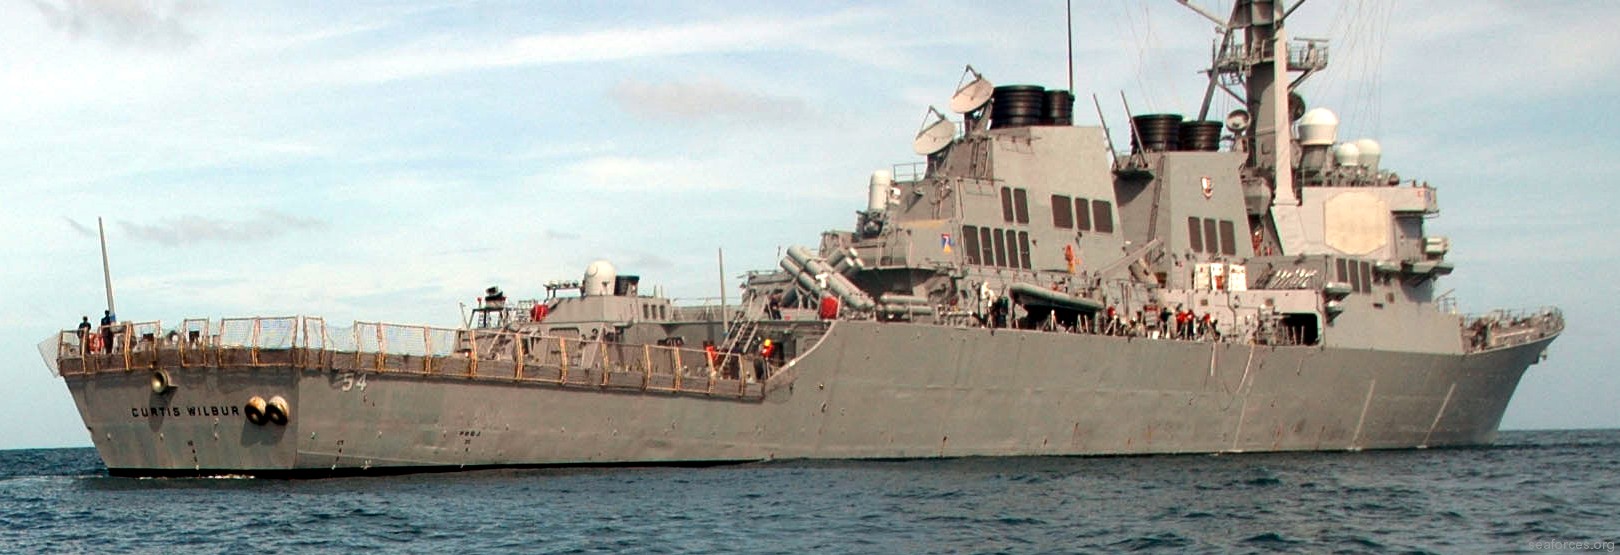 ddg-54 uss curtis wilbur destroyer us navy 33